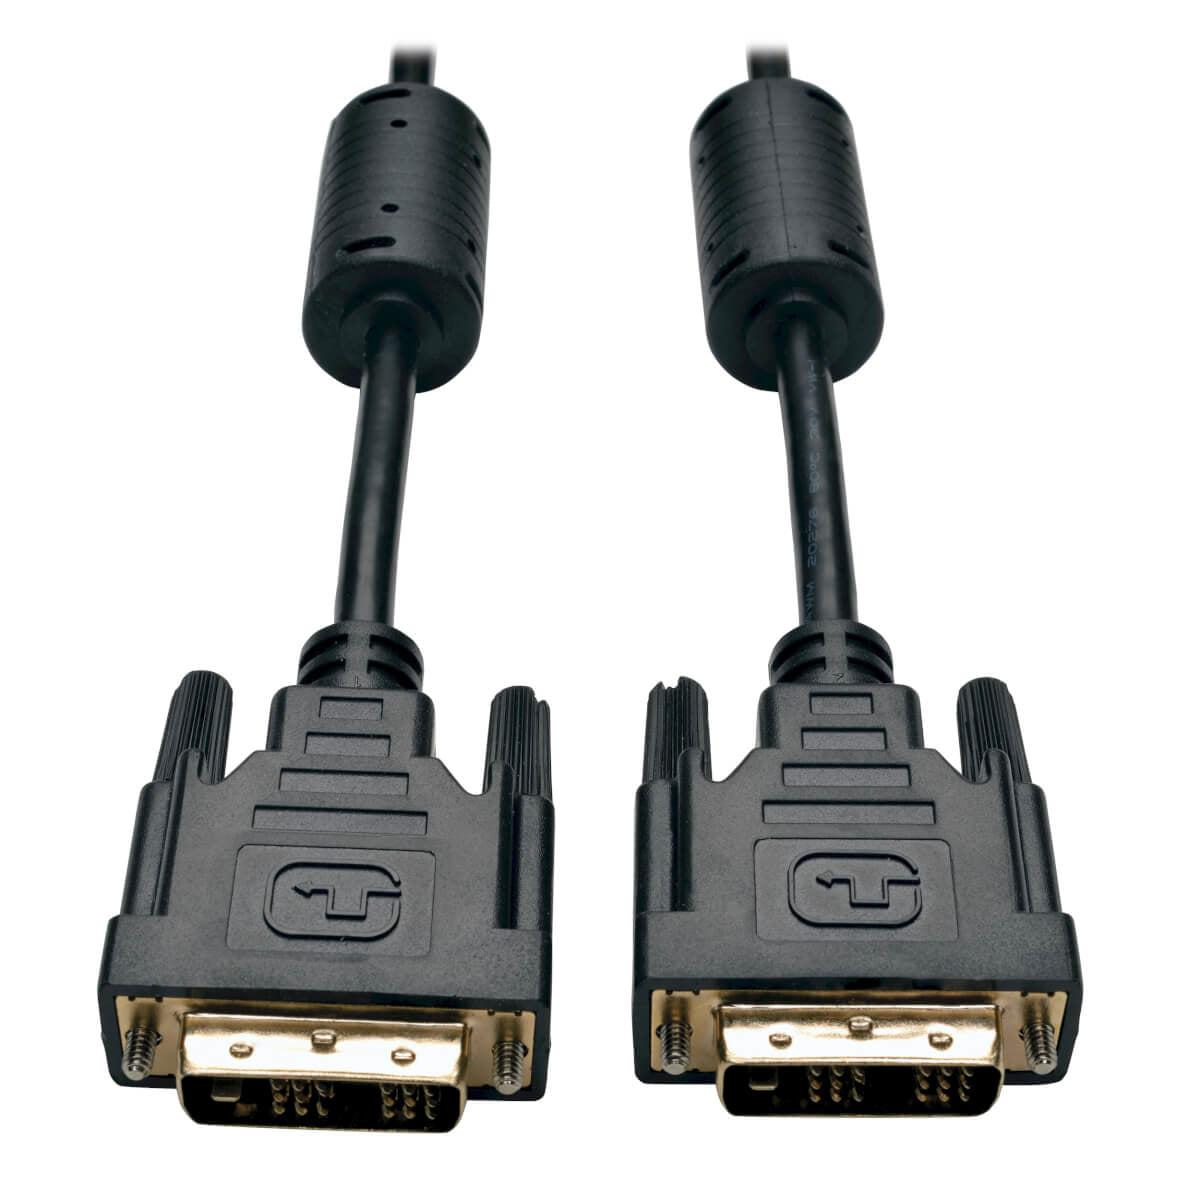 Tripp Lite P561-006 Dvi Single Link Cable, Digital Tmds Monitor Cable (Dvi-D M/M), 6 Ft. (1.83 M)